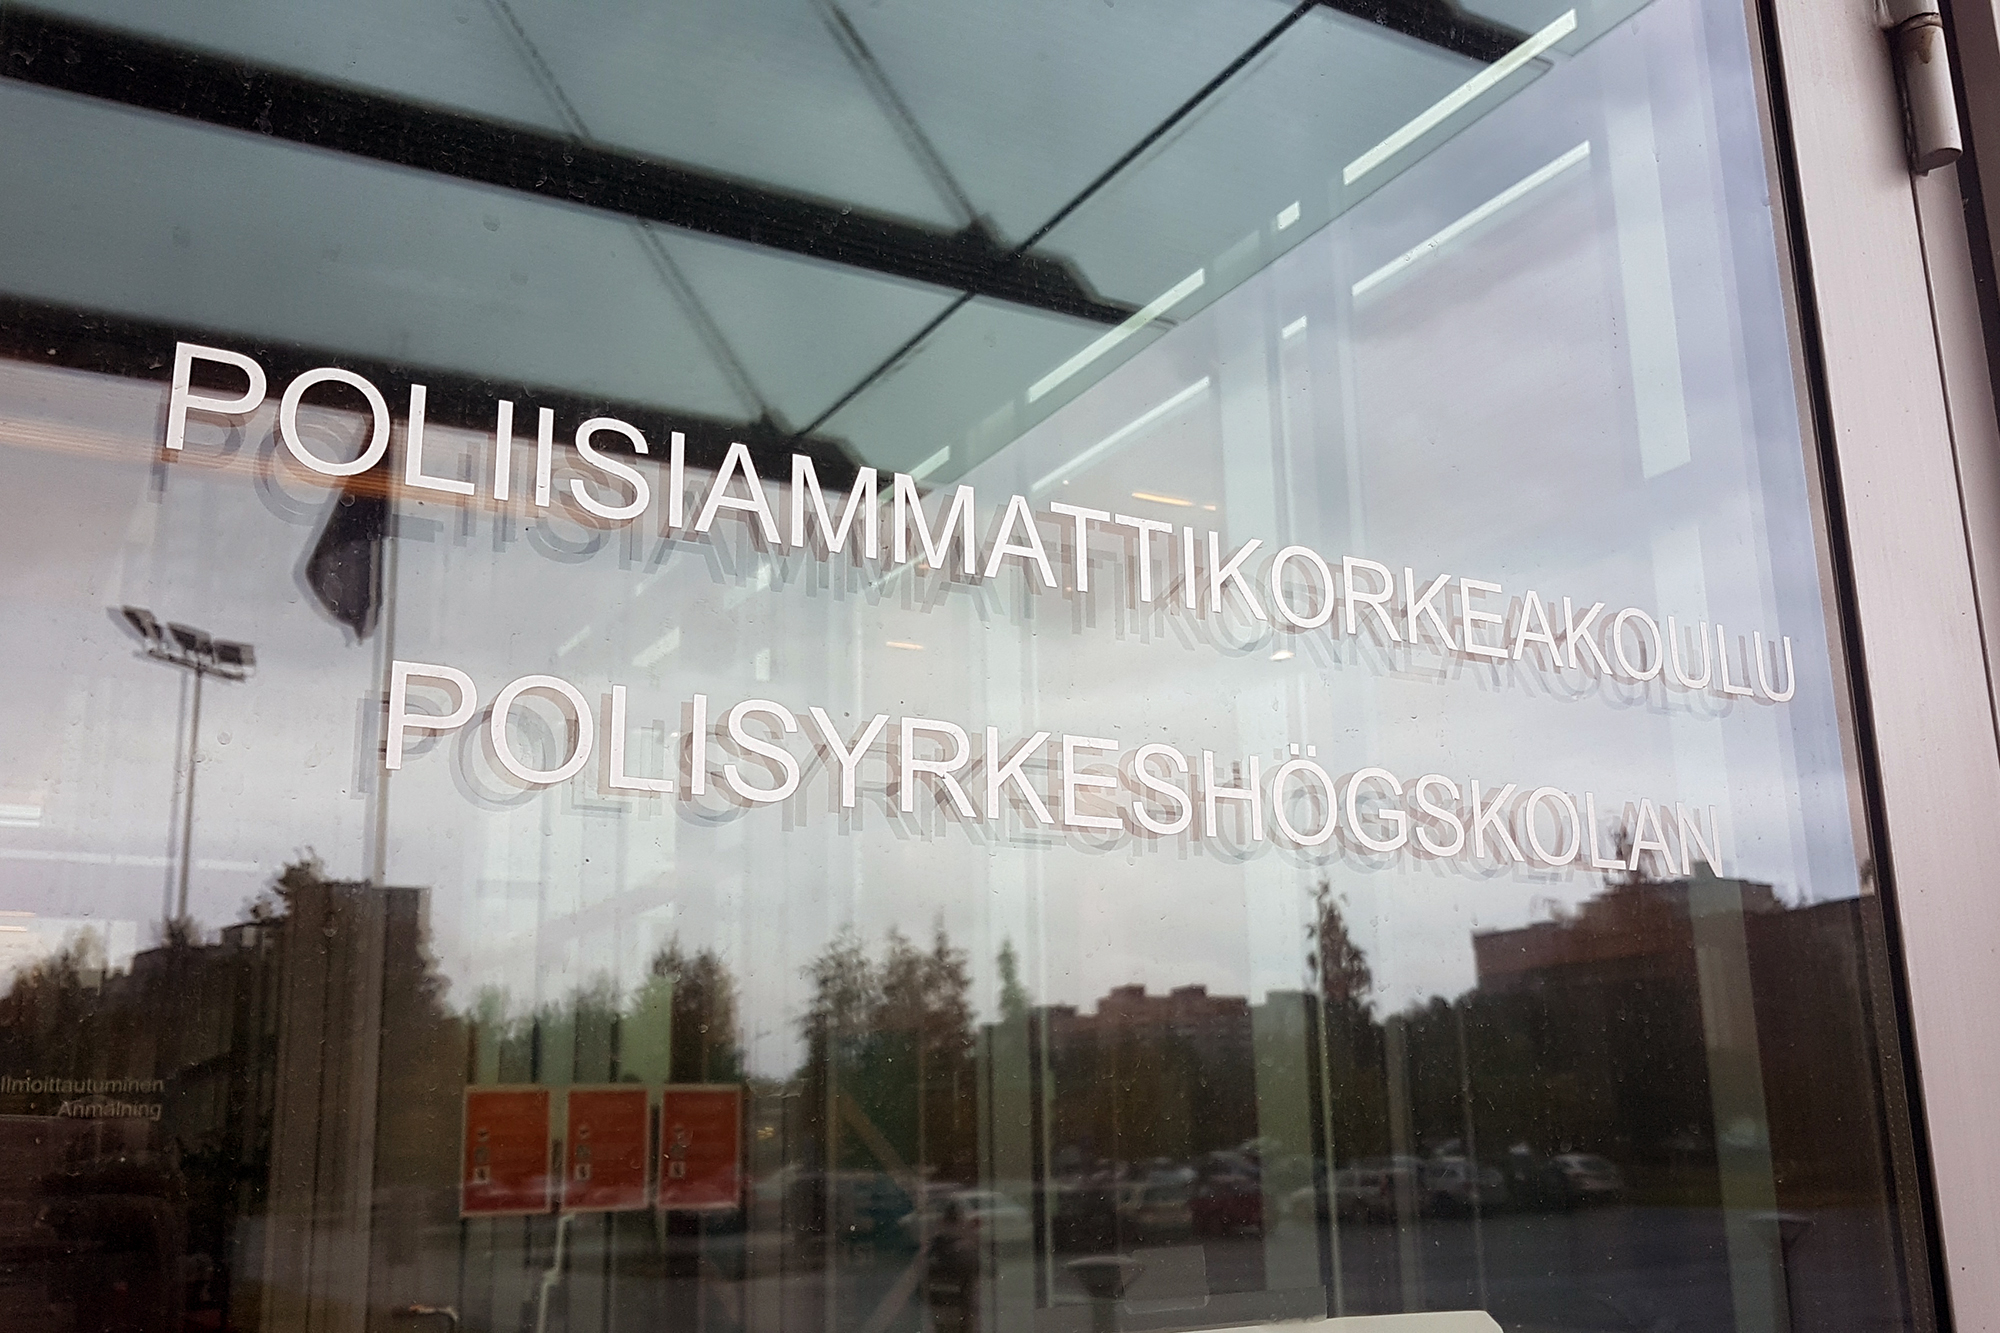 Polamk glass main door with the text Poliisiammattikorkeakoulu Polisyrkeshögskolan.